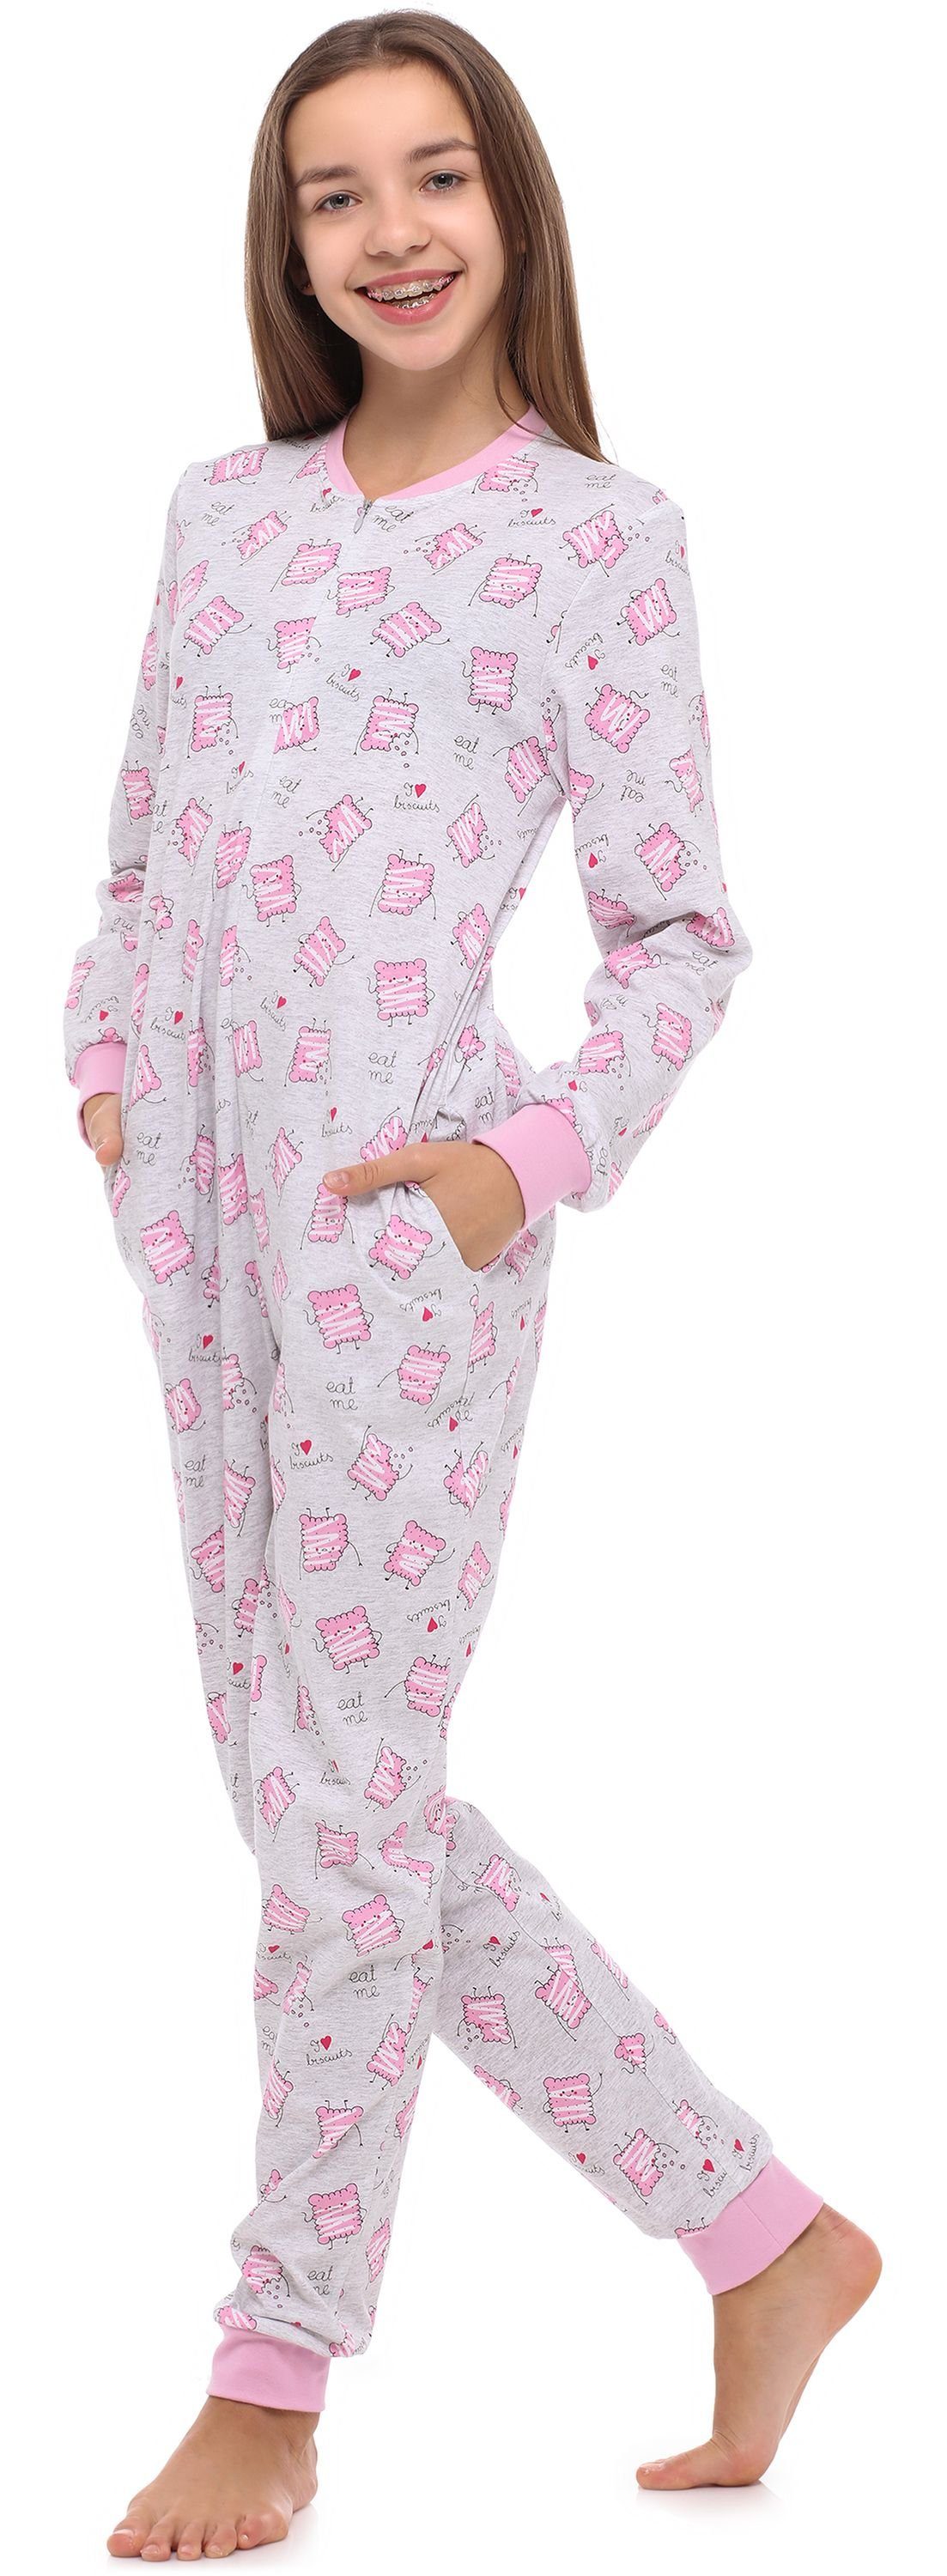 MS10-235 Merry Style Schlafanzug Schlafanzug Jugend Mädchen Melange/Kekse Schlafoverall